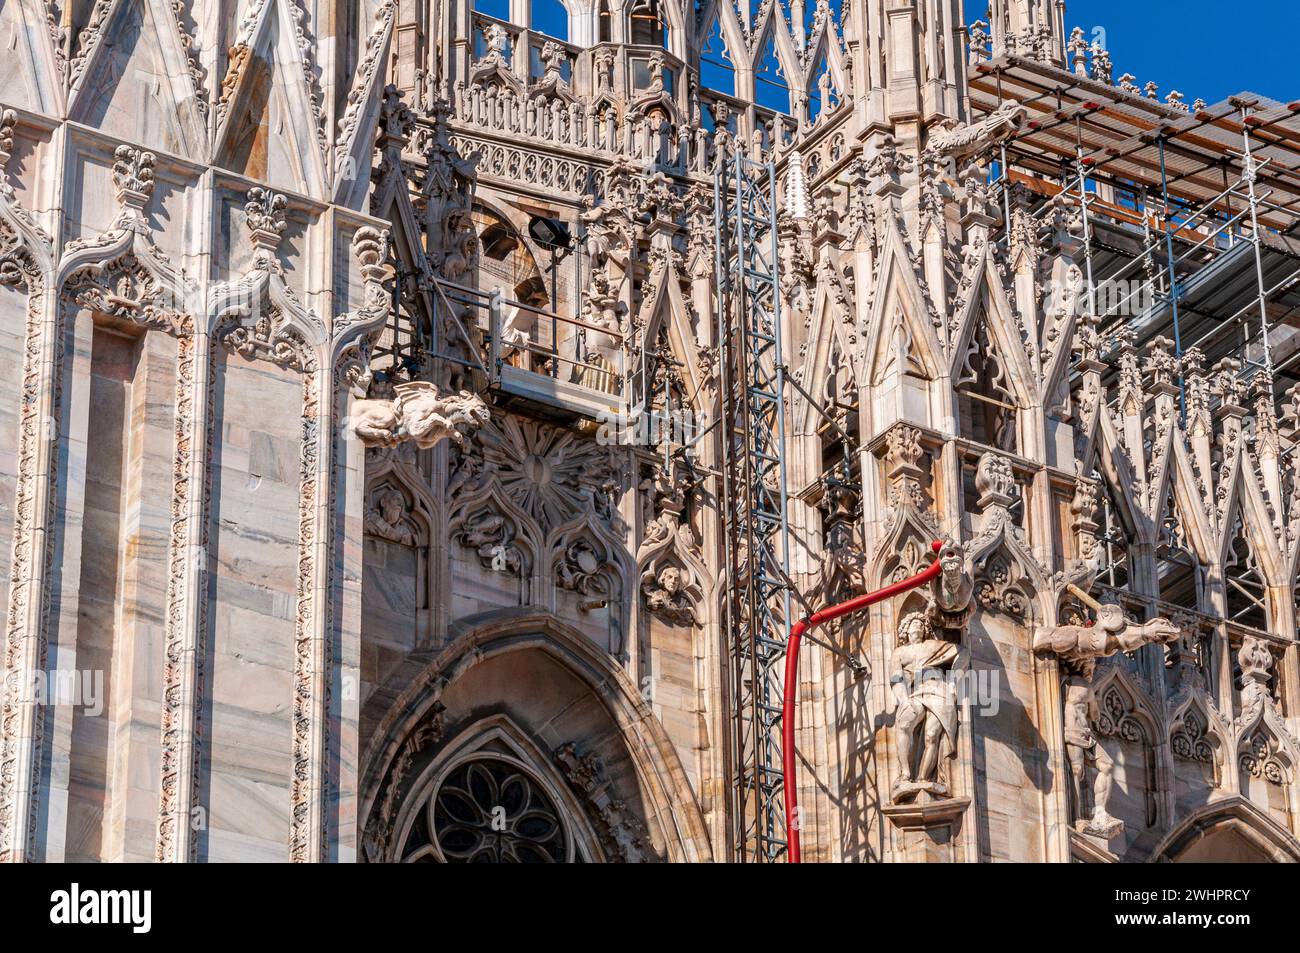 Dettagli di manutenzione sulla facciata del Duomo di Milano Foto Stock